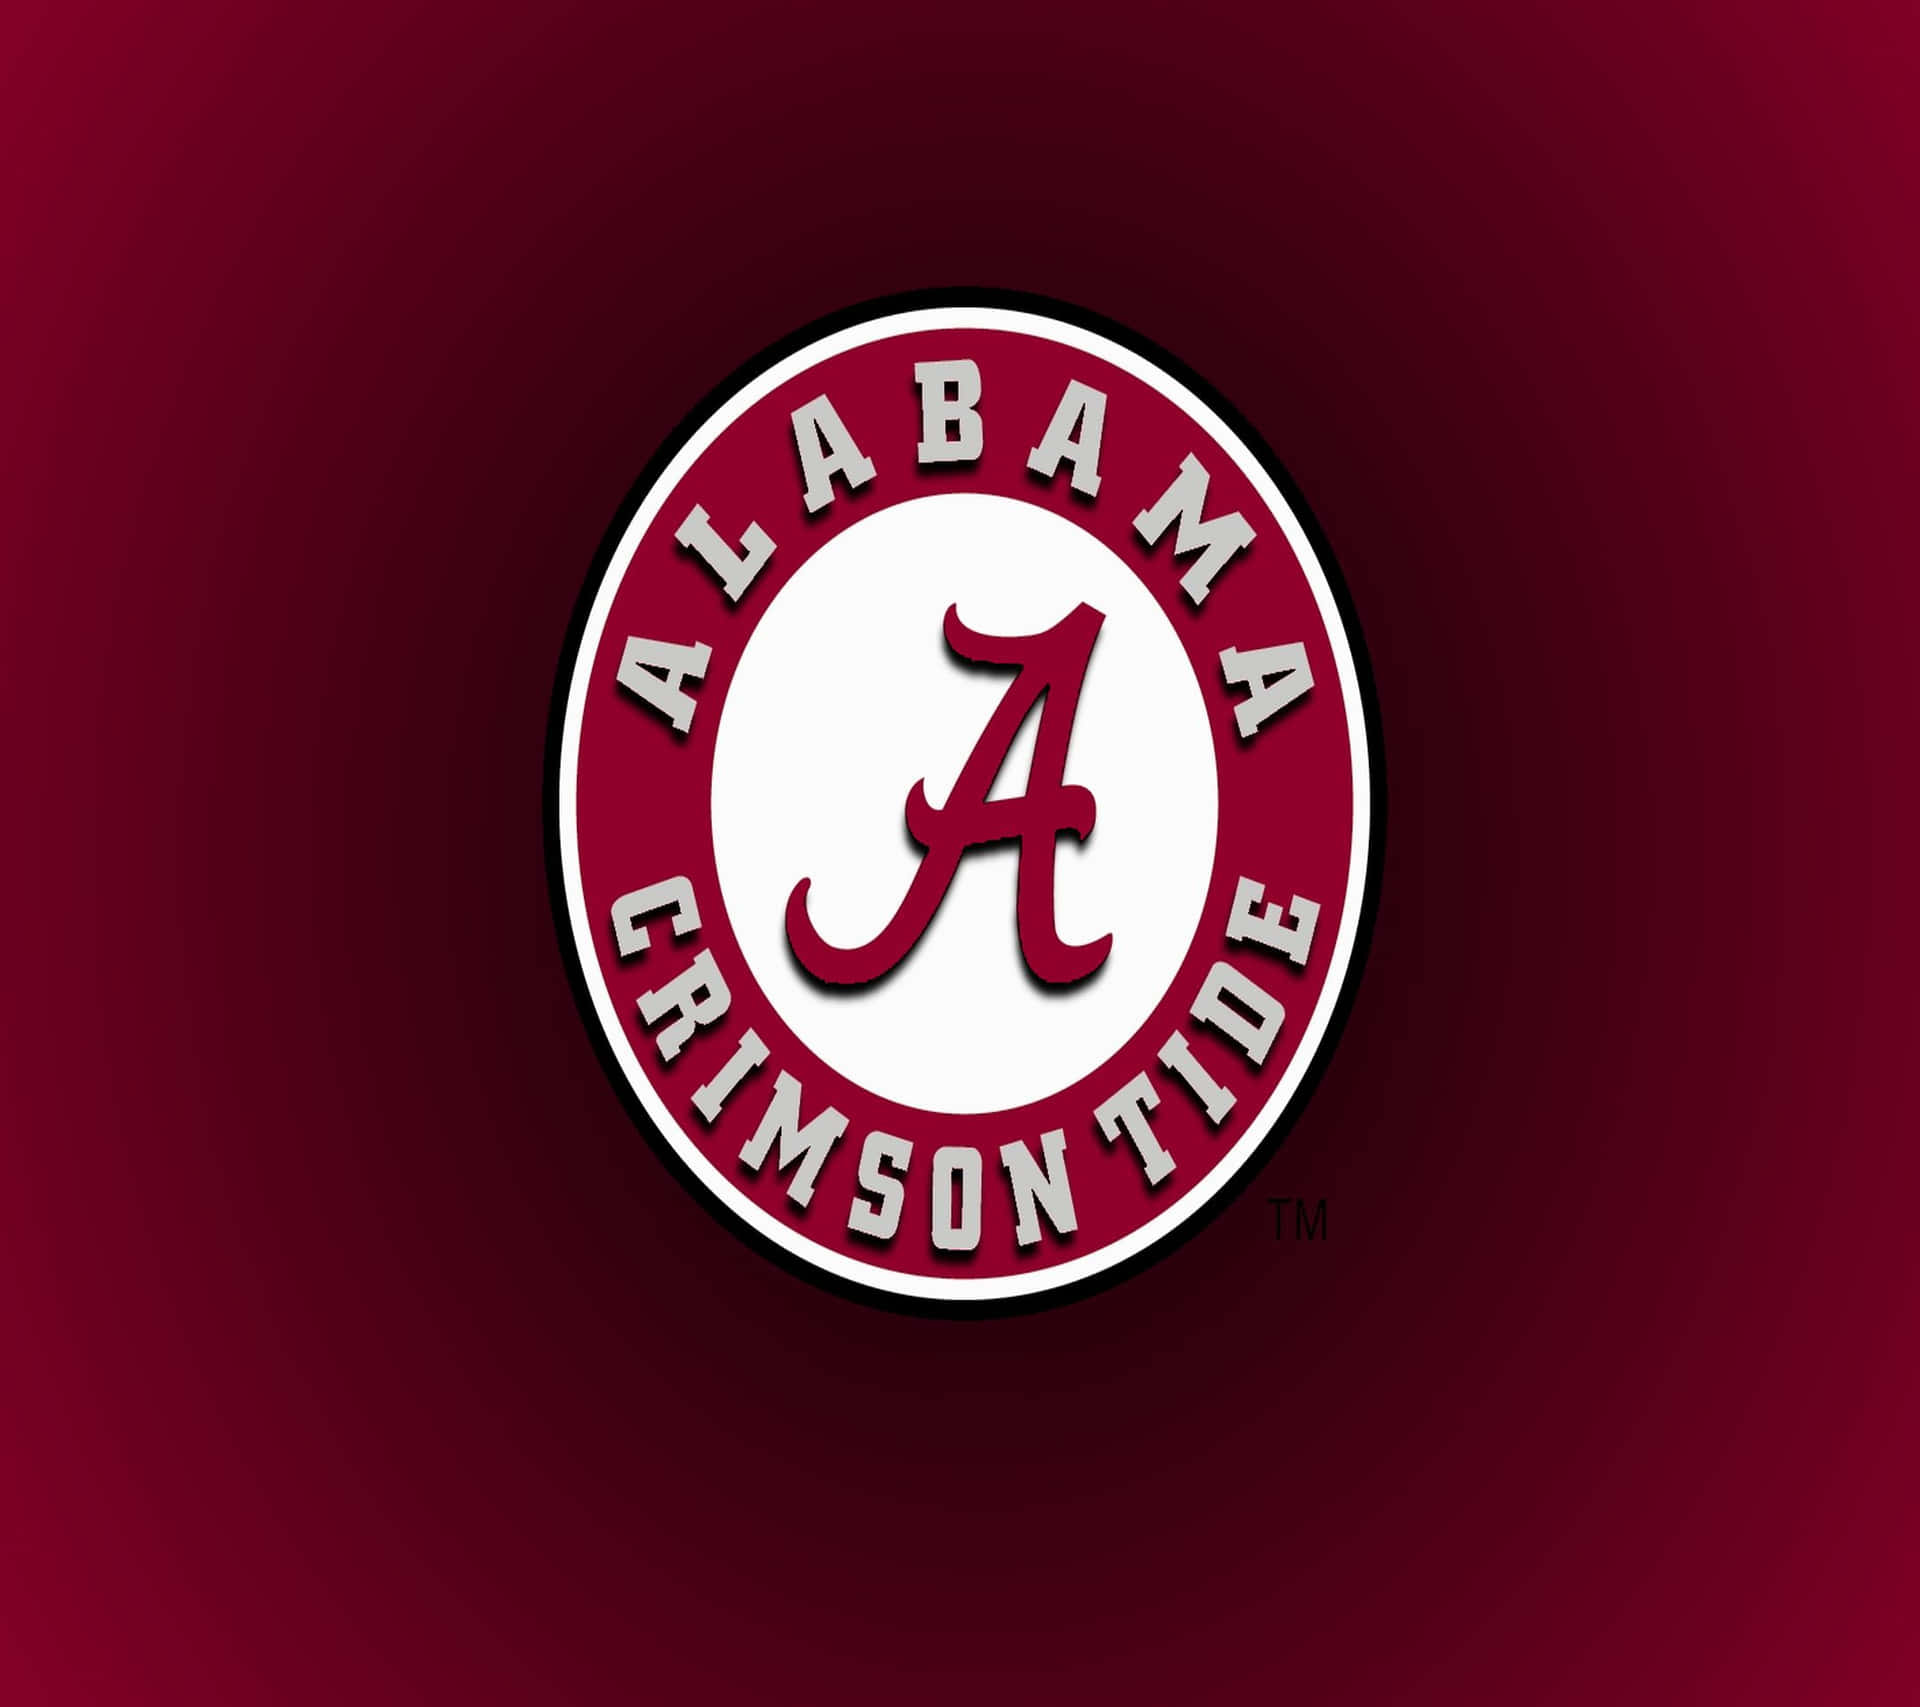 ________________Det officielle logo af Alabama Football-holdet Wallpaper